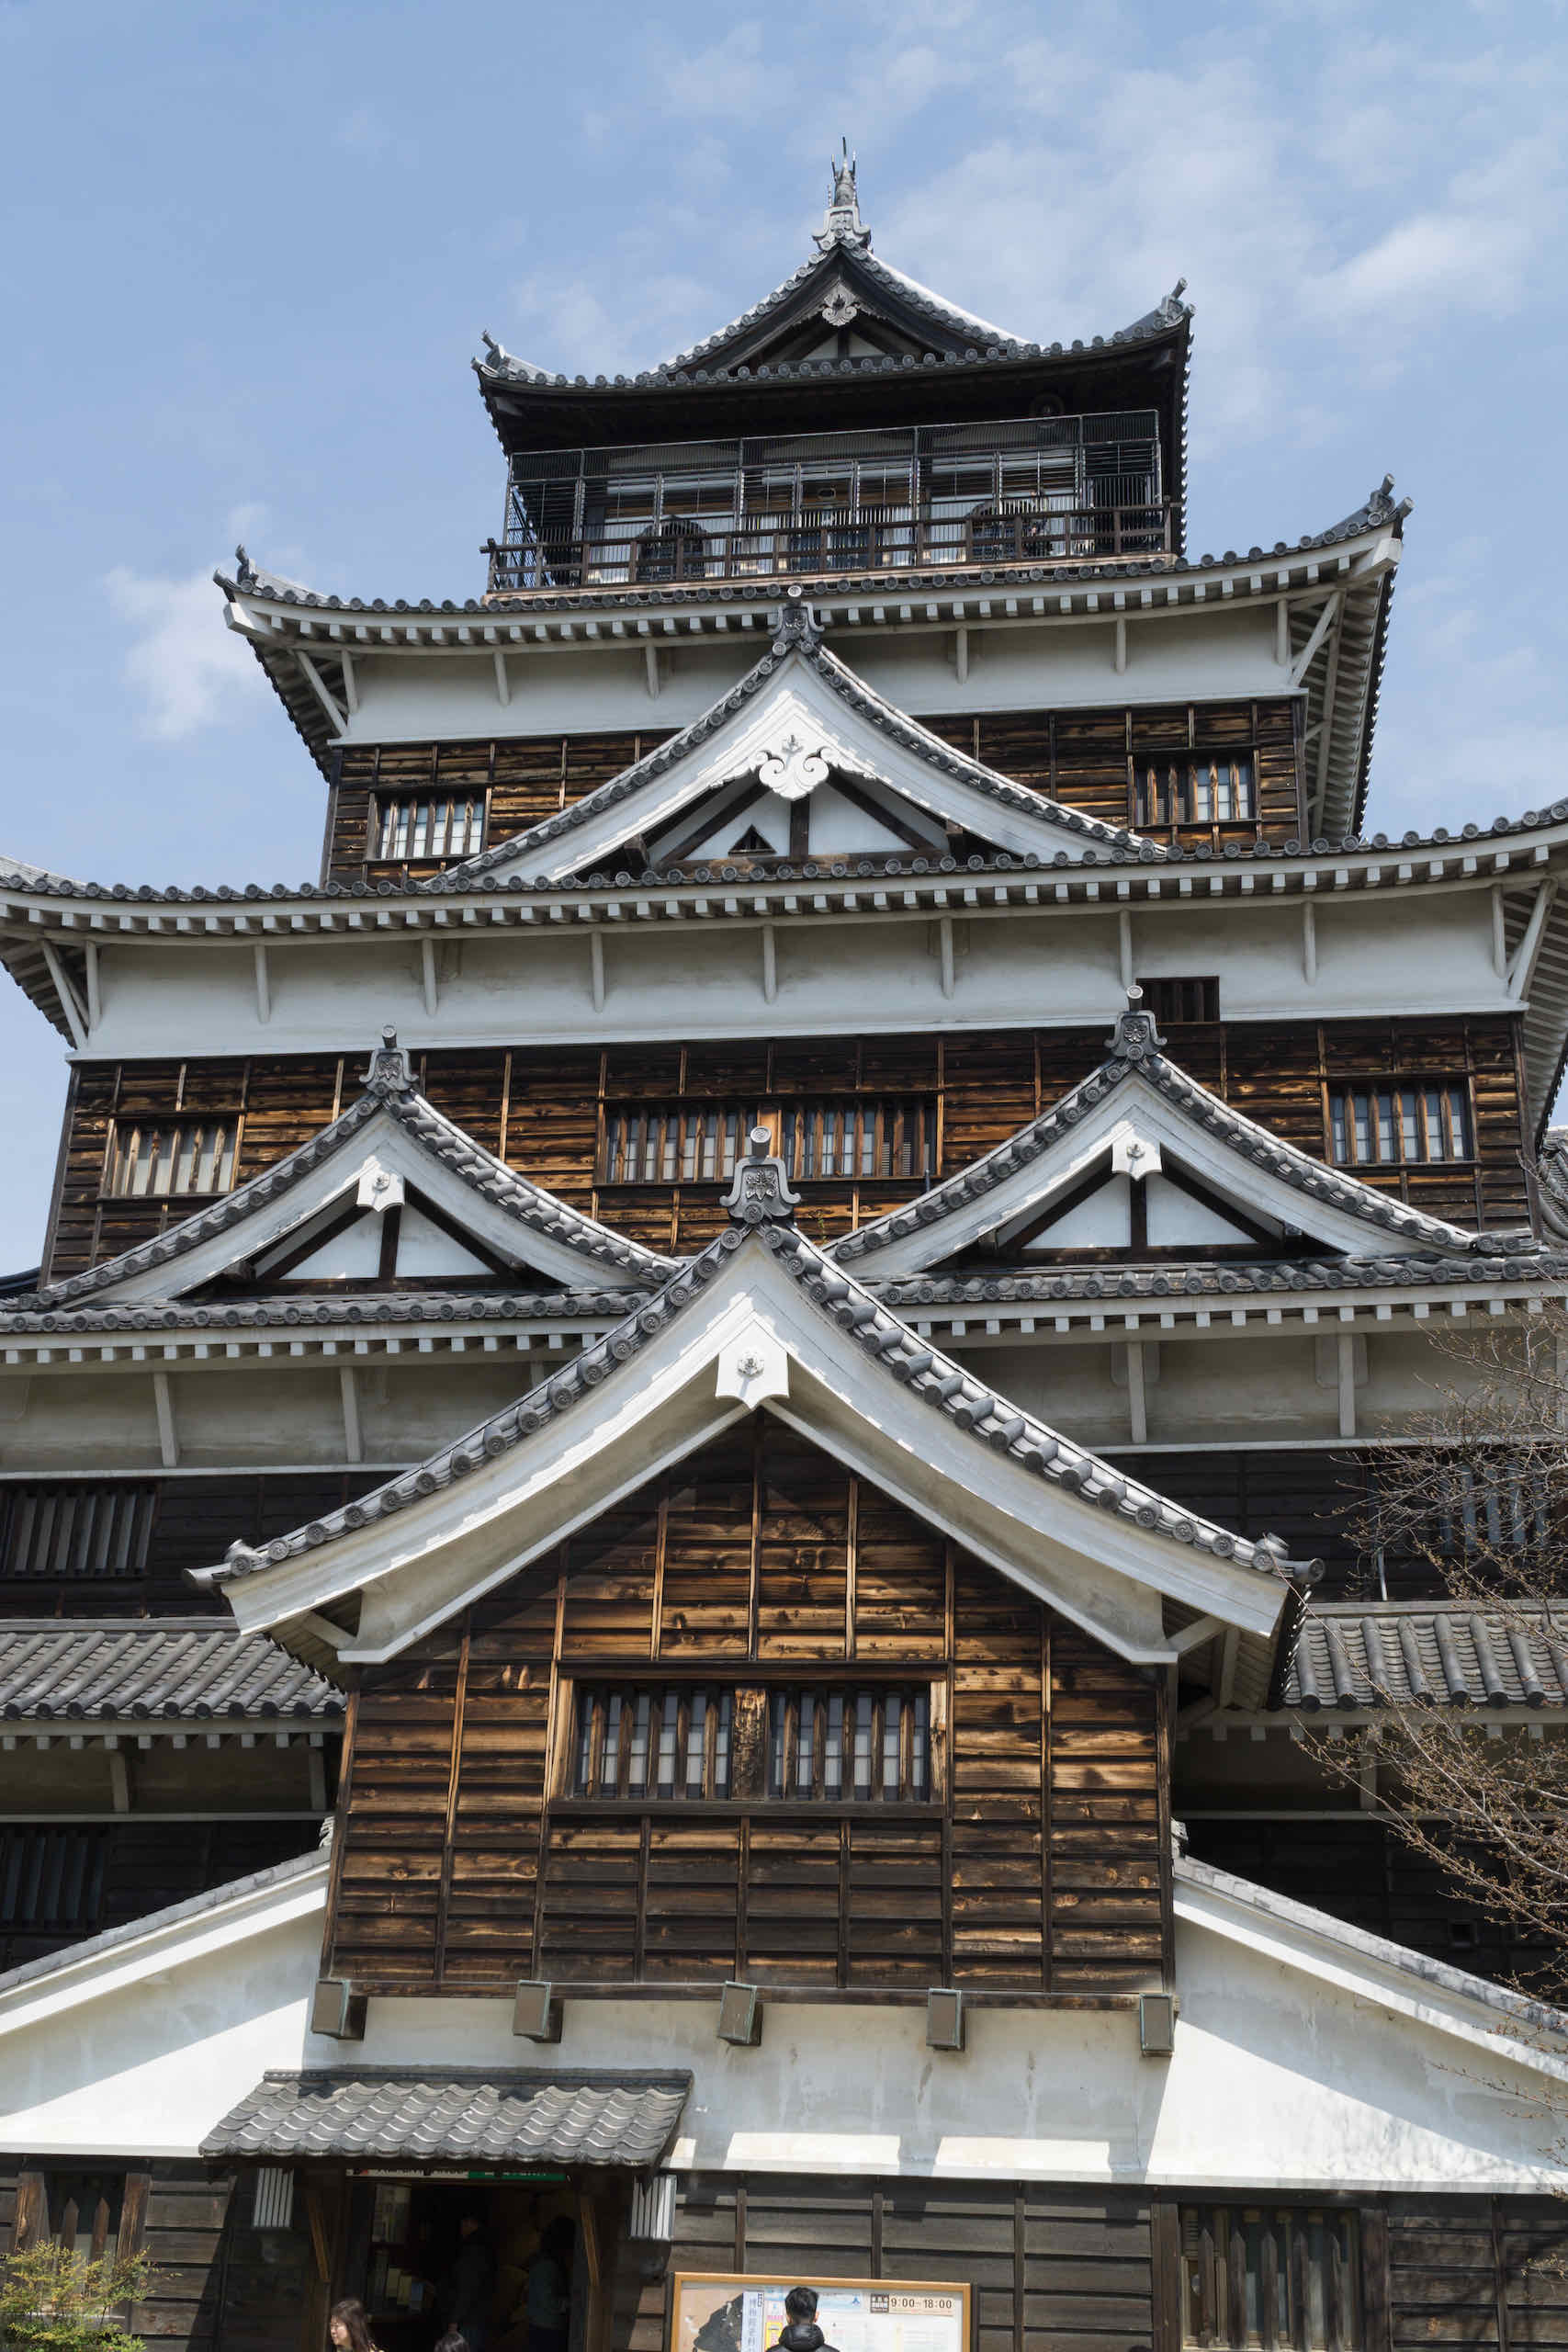 hiroshima castle